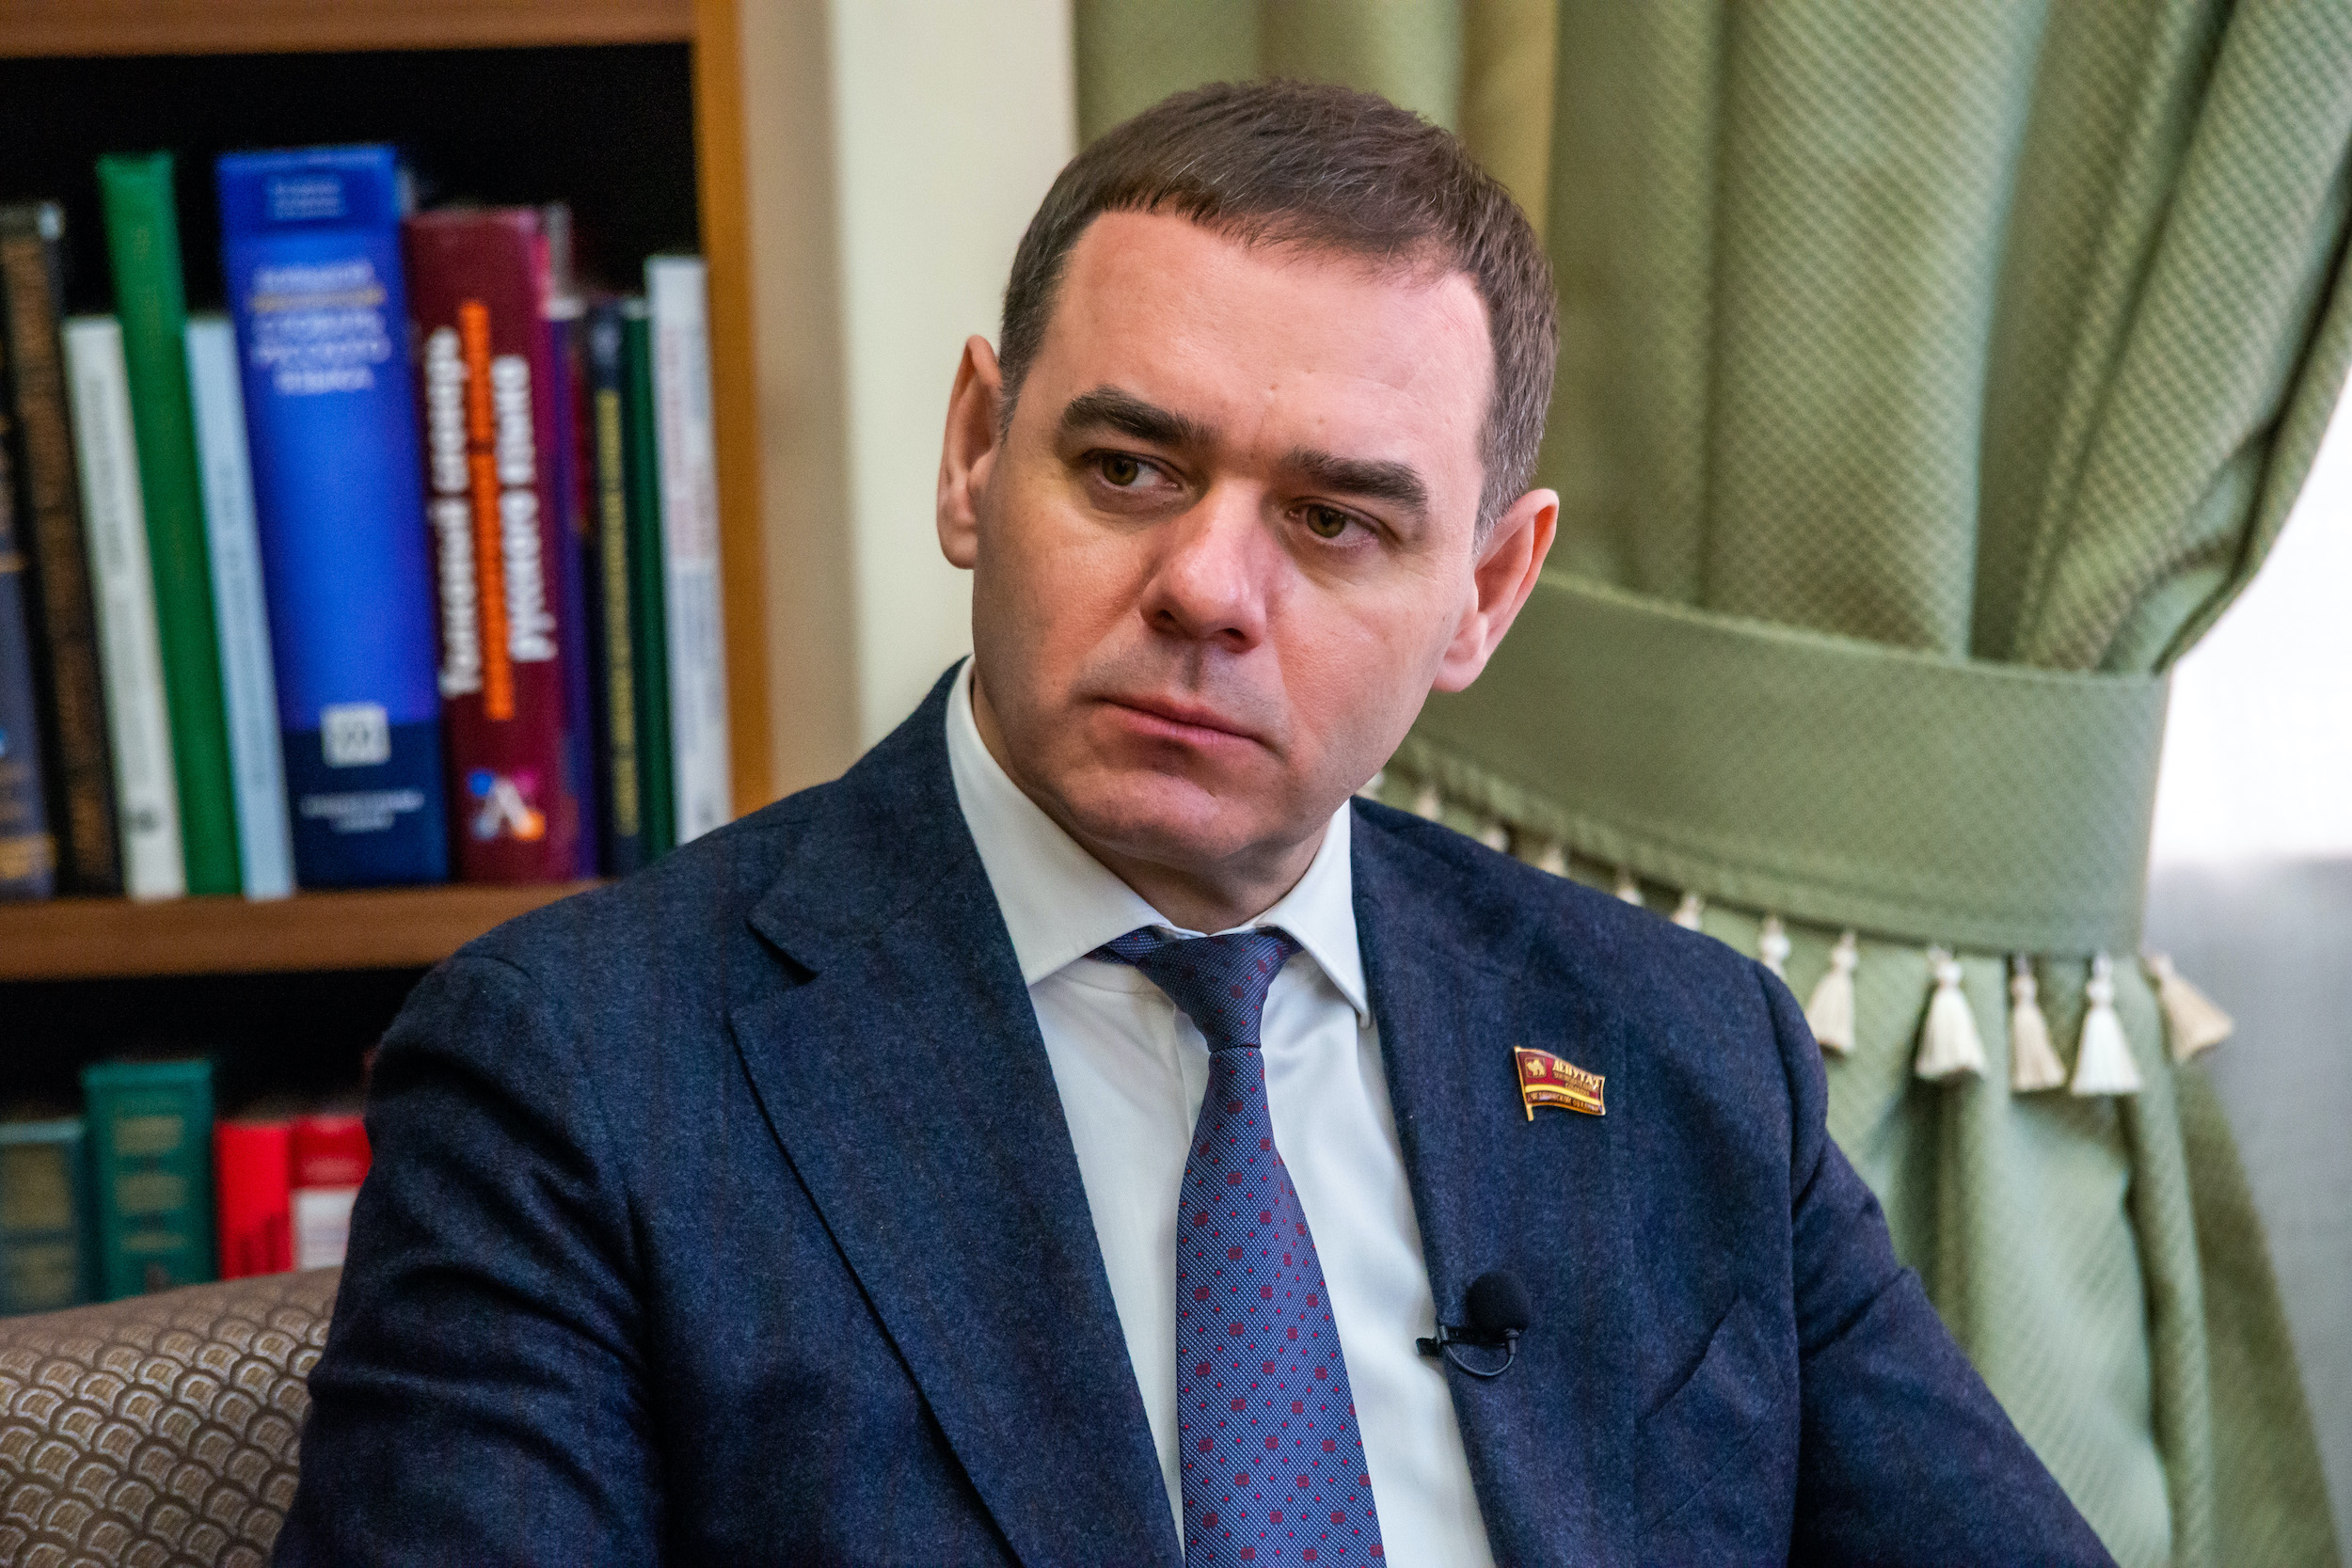 Александр Лазарев: "Ни один вопрос не поставил главу региона в тупик"